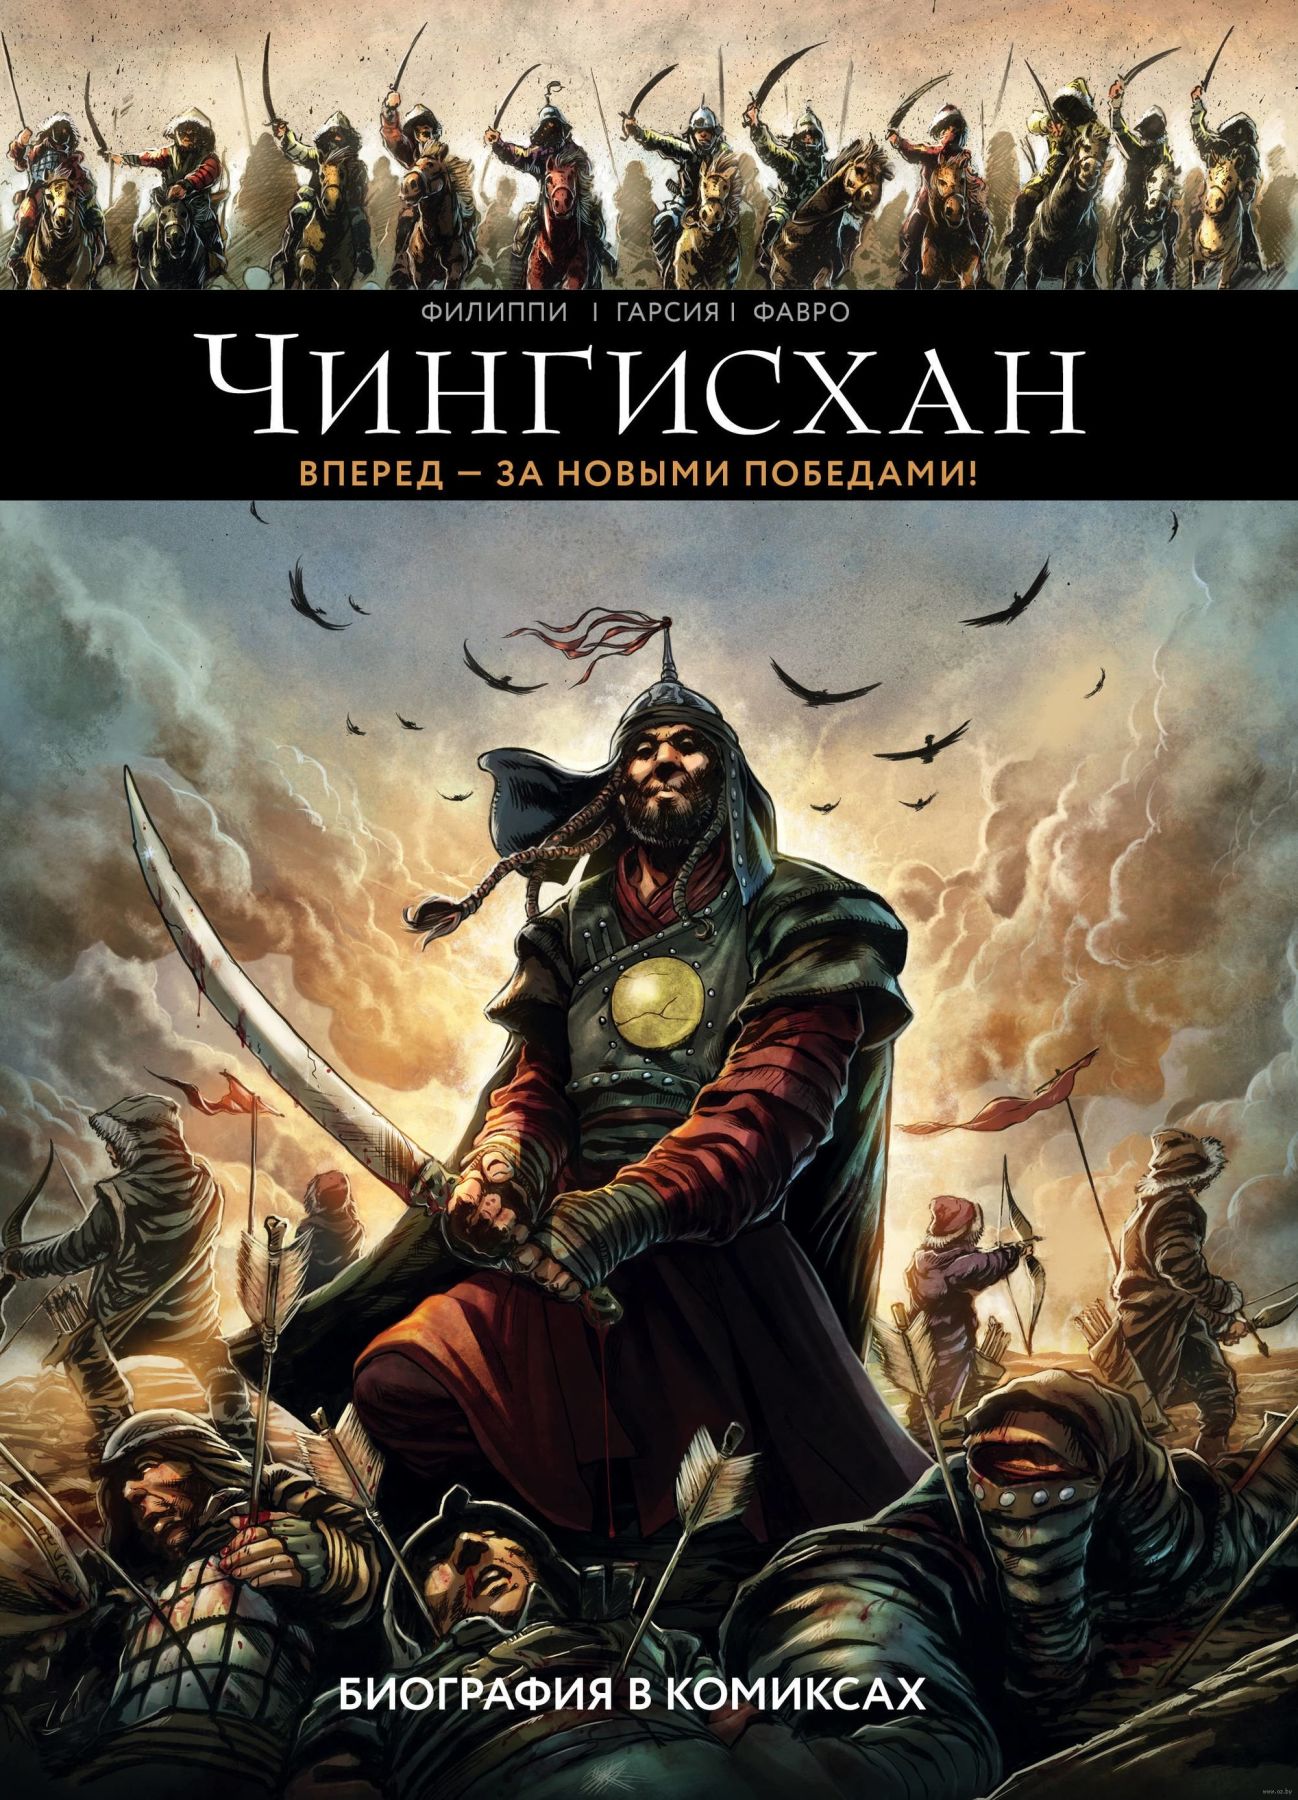 Комикс на русском языке «Чингисхан. Биография в комиксах»